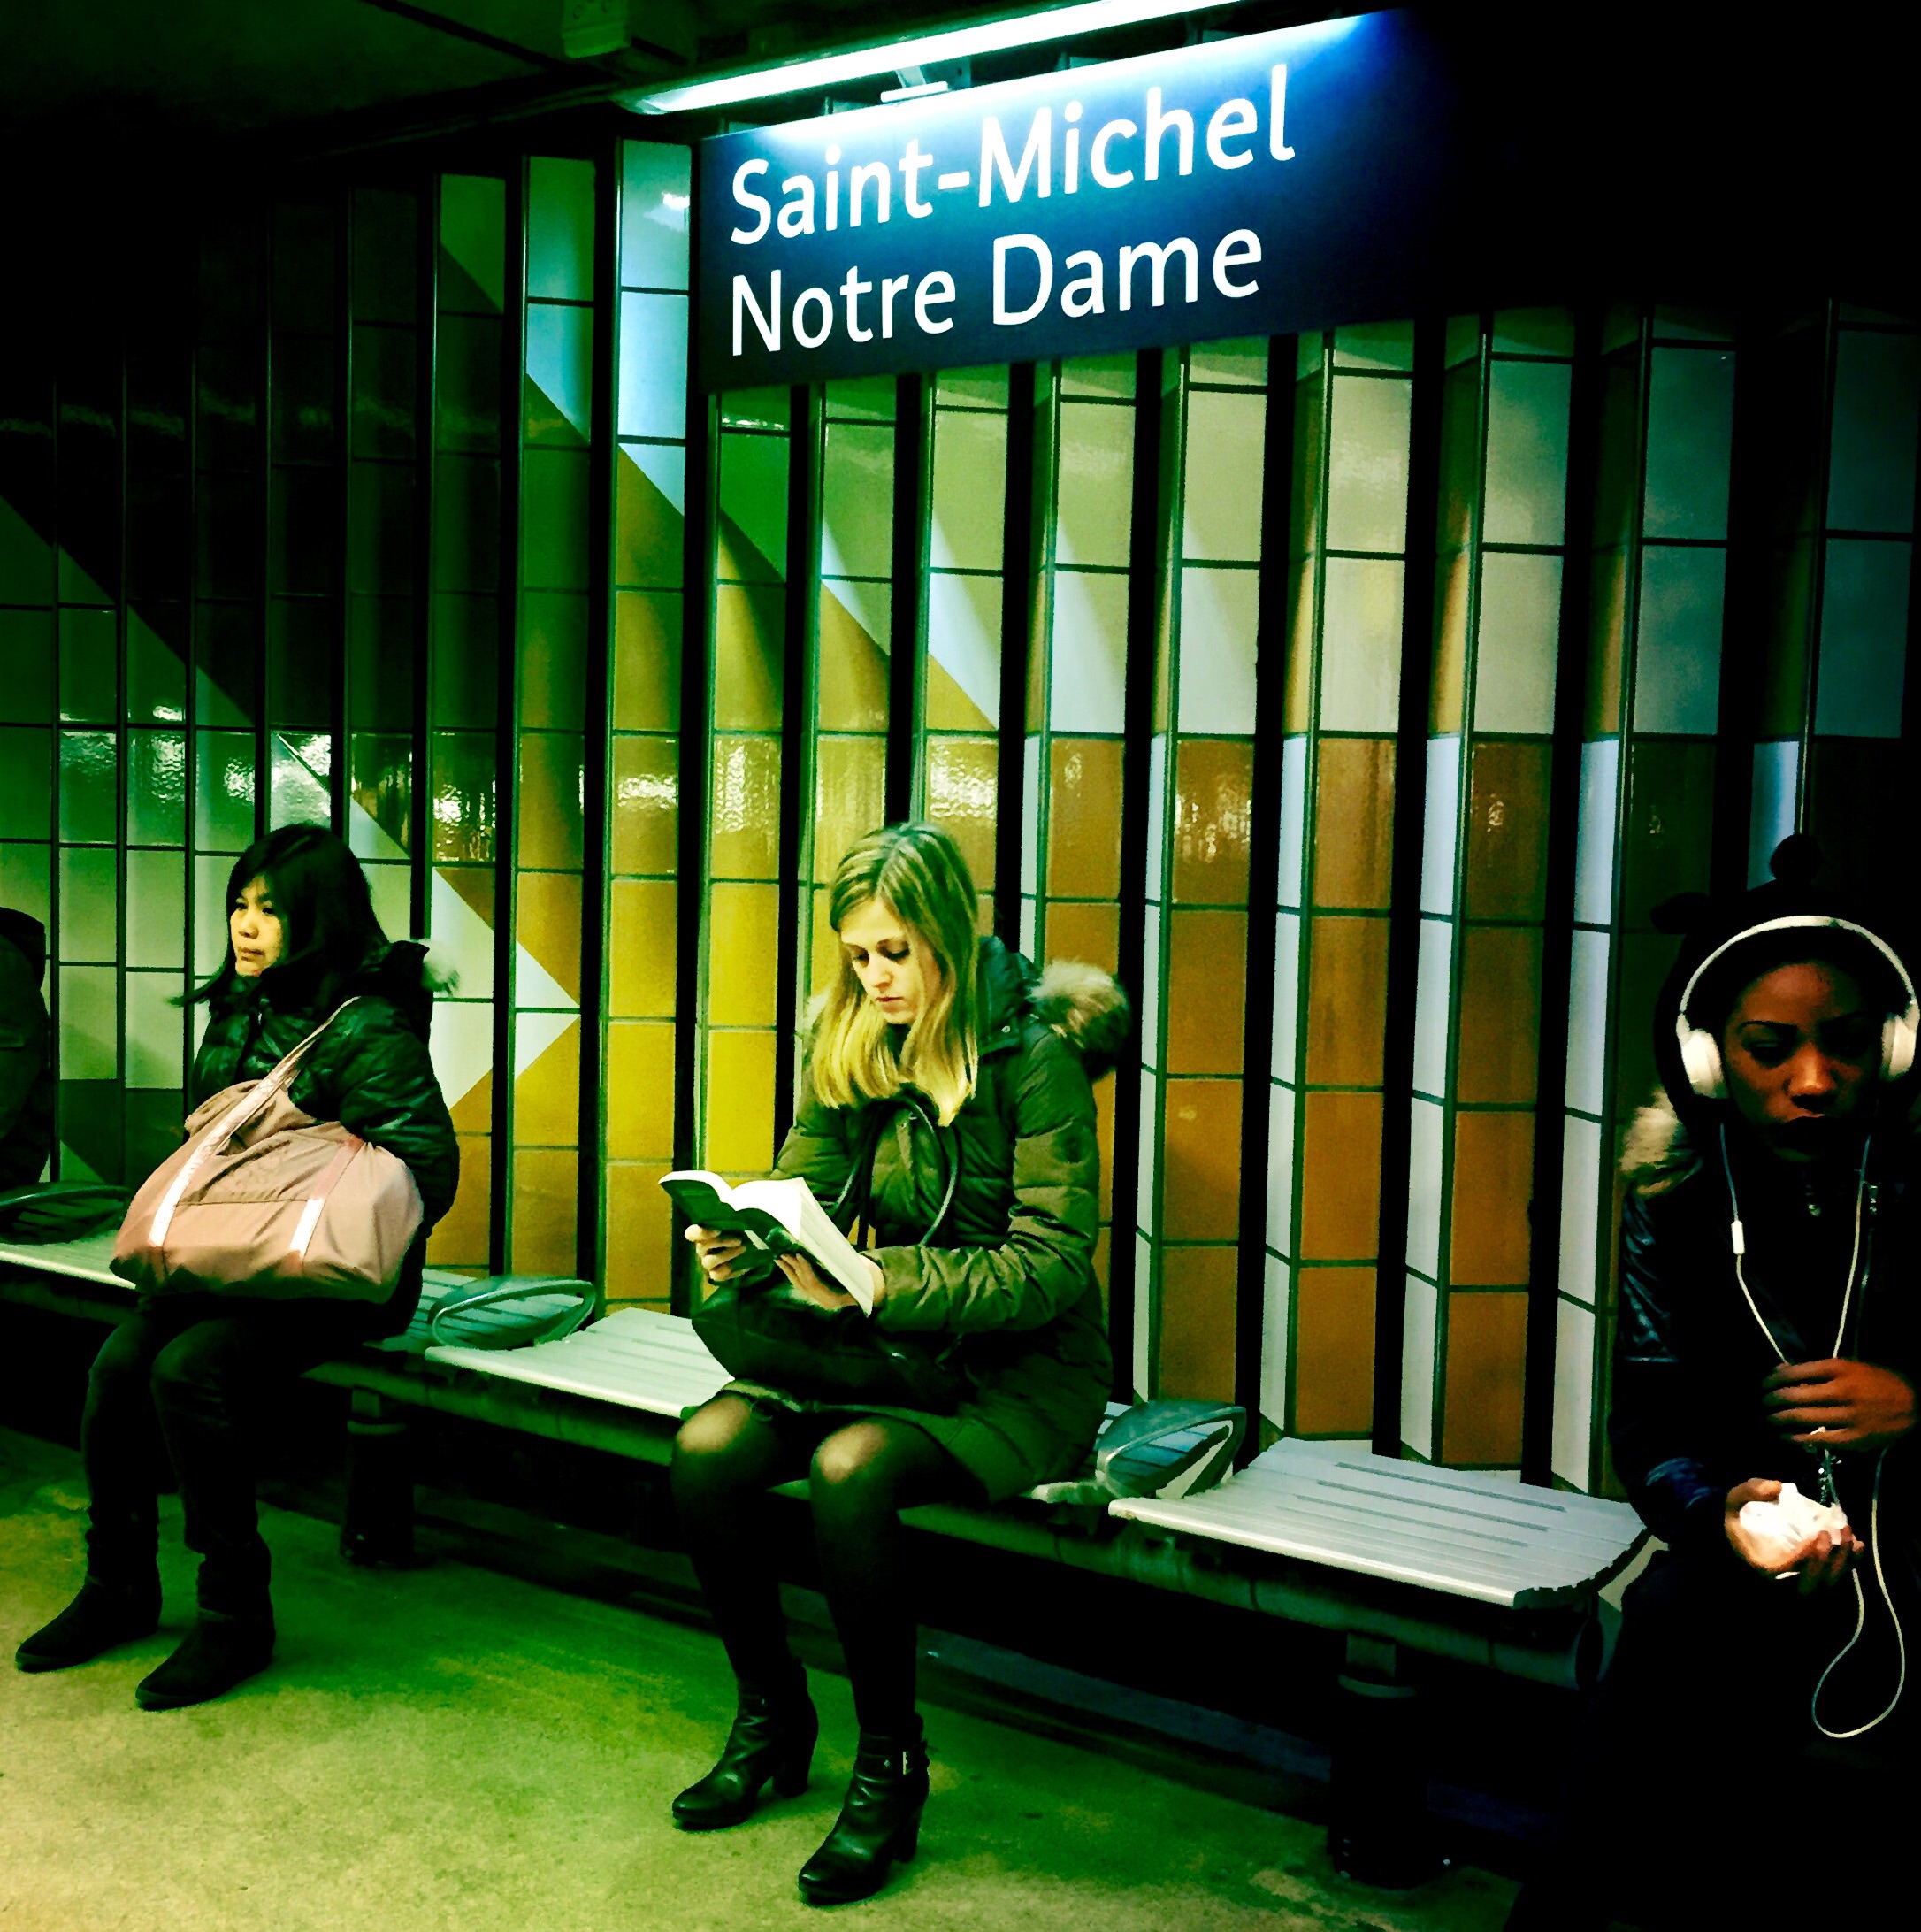 Leyendo "Cincuenta sombras de Grey" de E.L. James en la estación St Michel-Notre Dame.